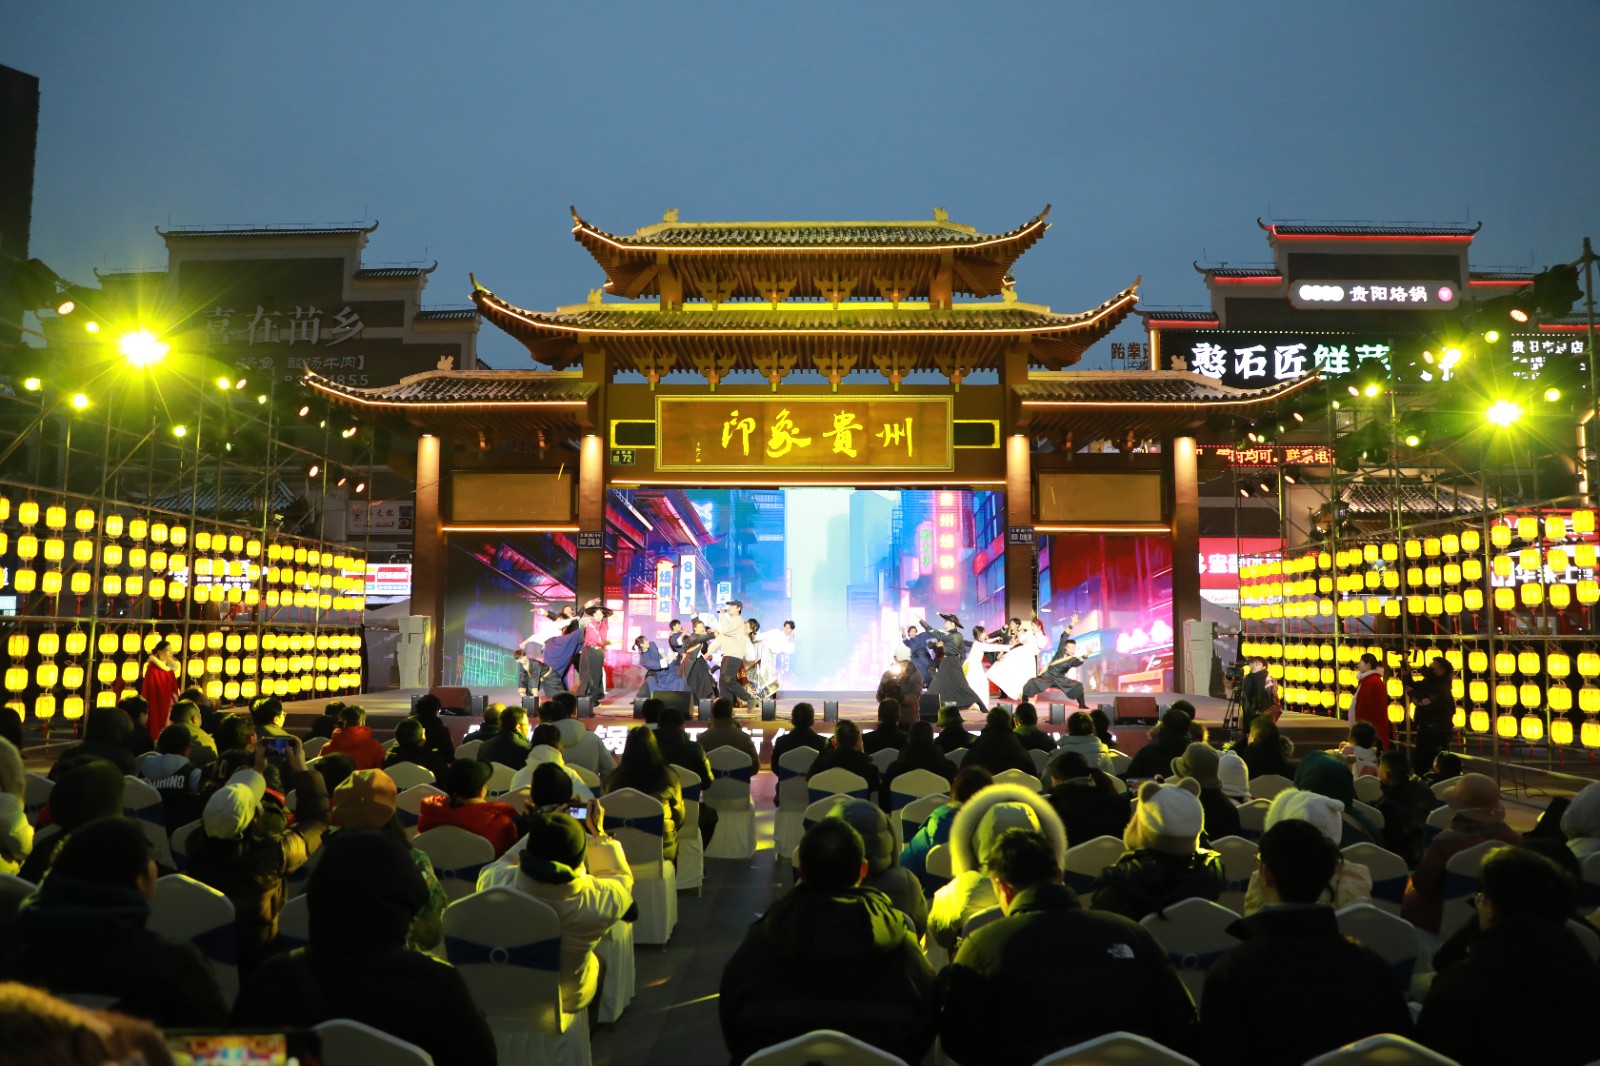 貴州烙鍋街開街儀式暨烙鍋文化節活動現場。